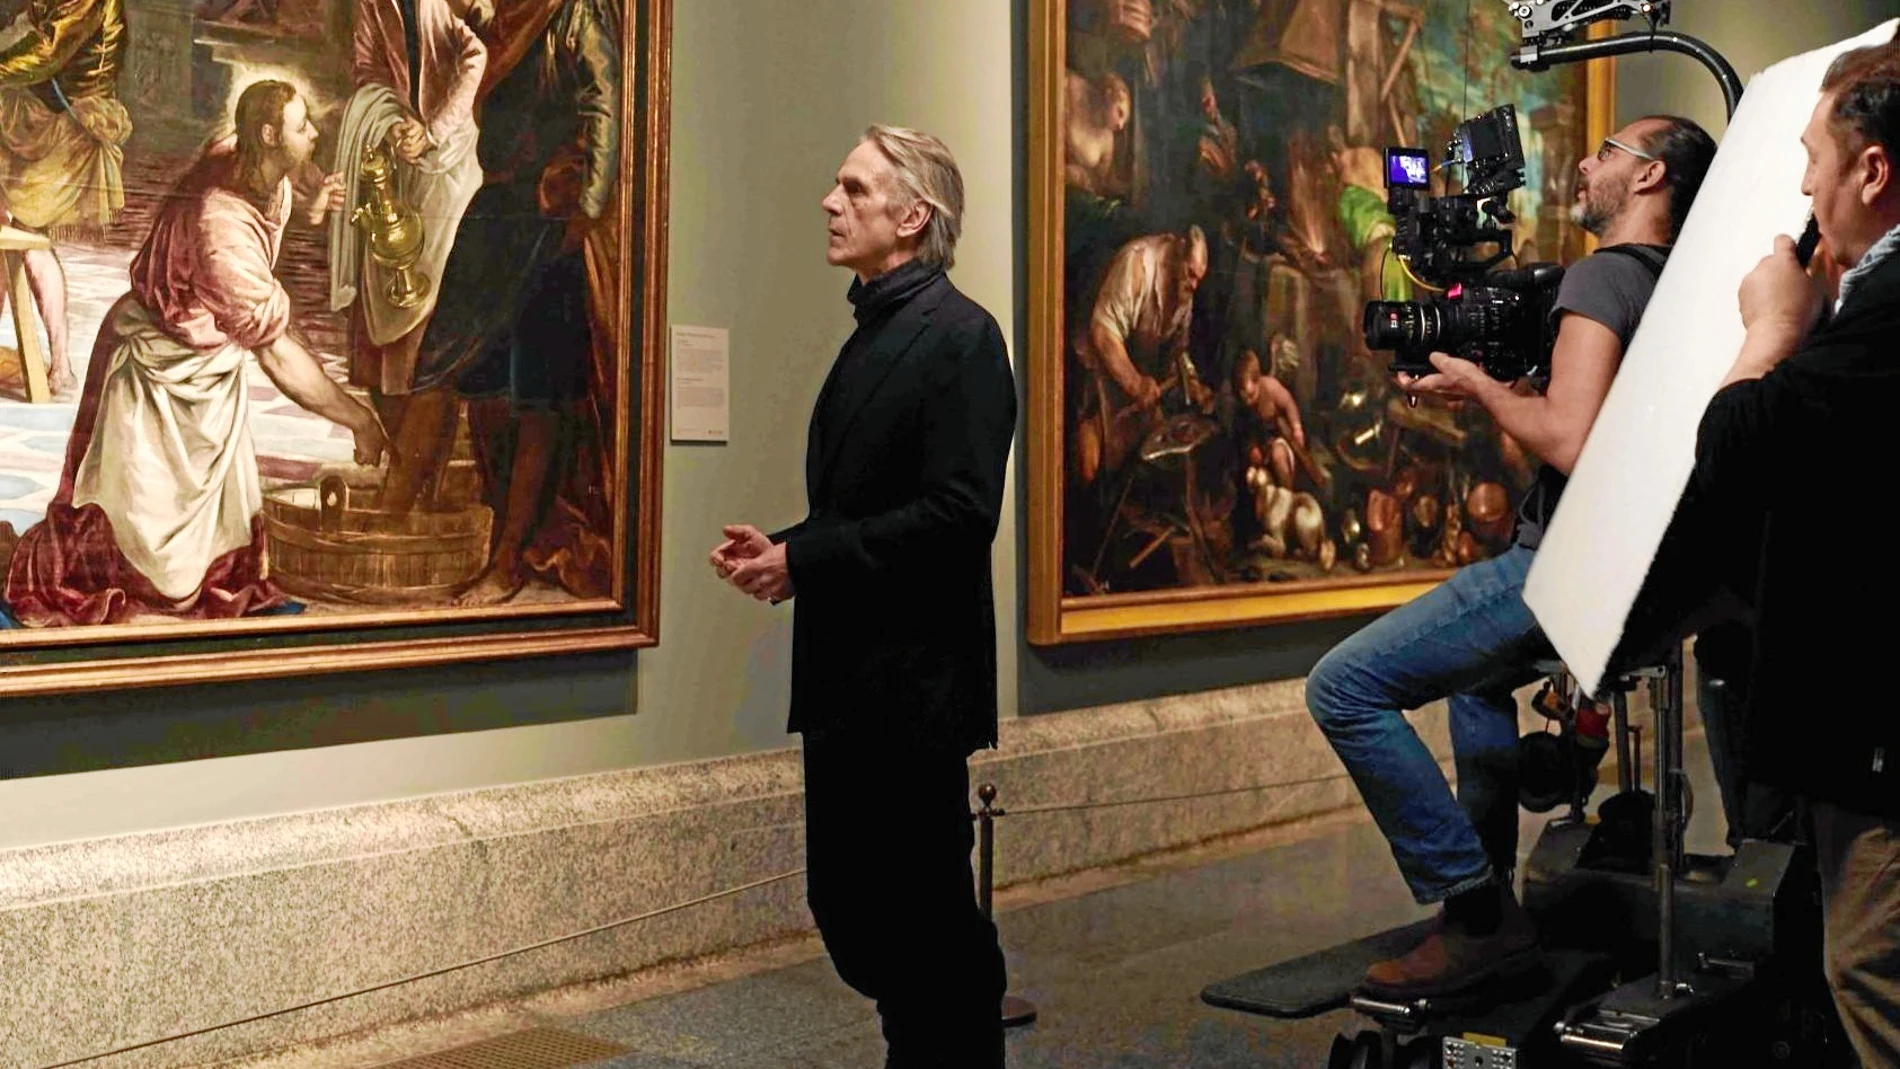 Jeremy Irons, durante el rodaje del documental, frente a «El lavatorio», de Tintoretto, una de las obras que se muestran en la cinta que celebra el bicentenario de la pinacoteca